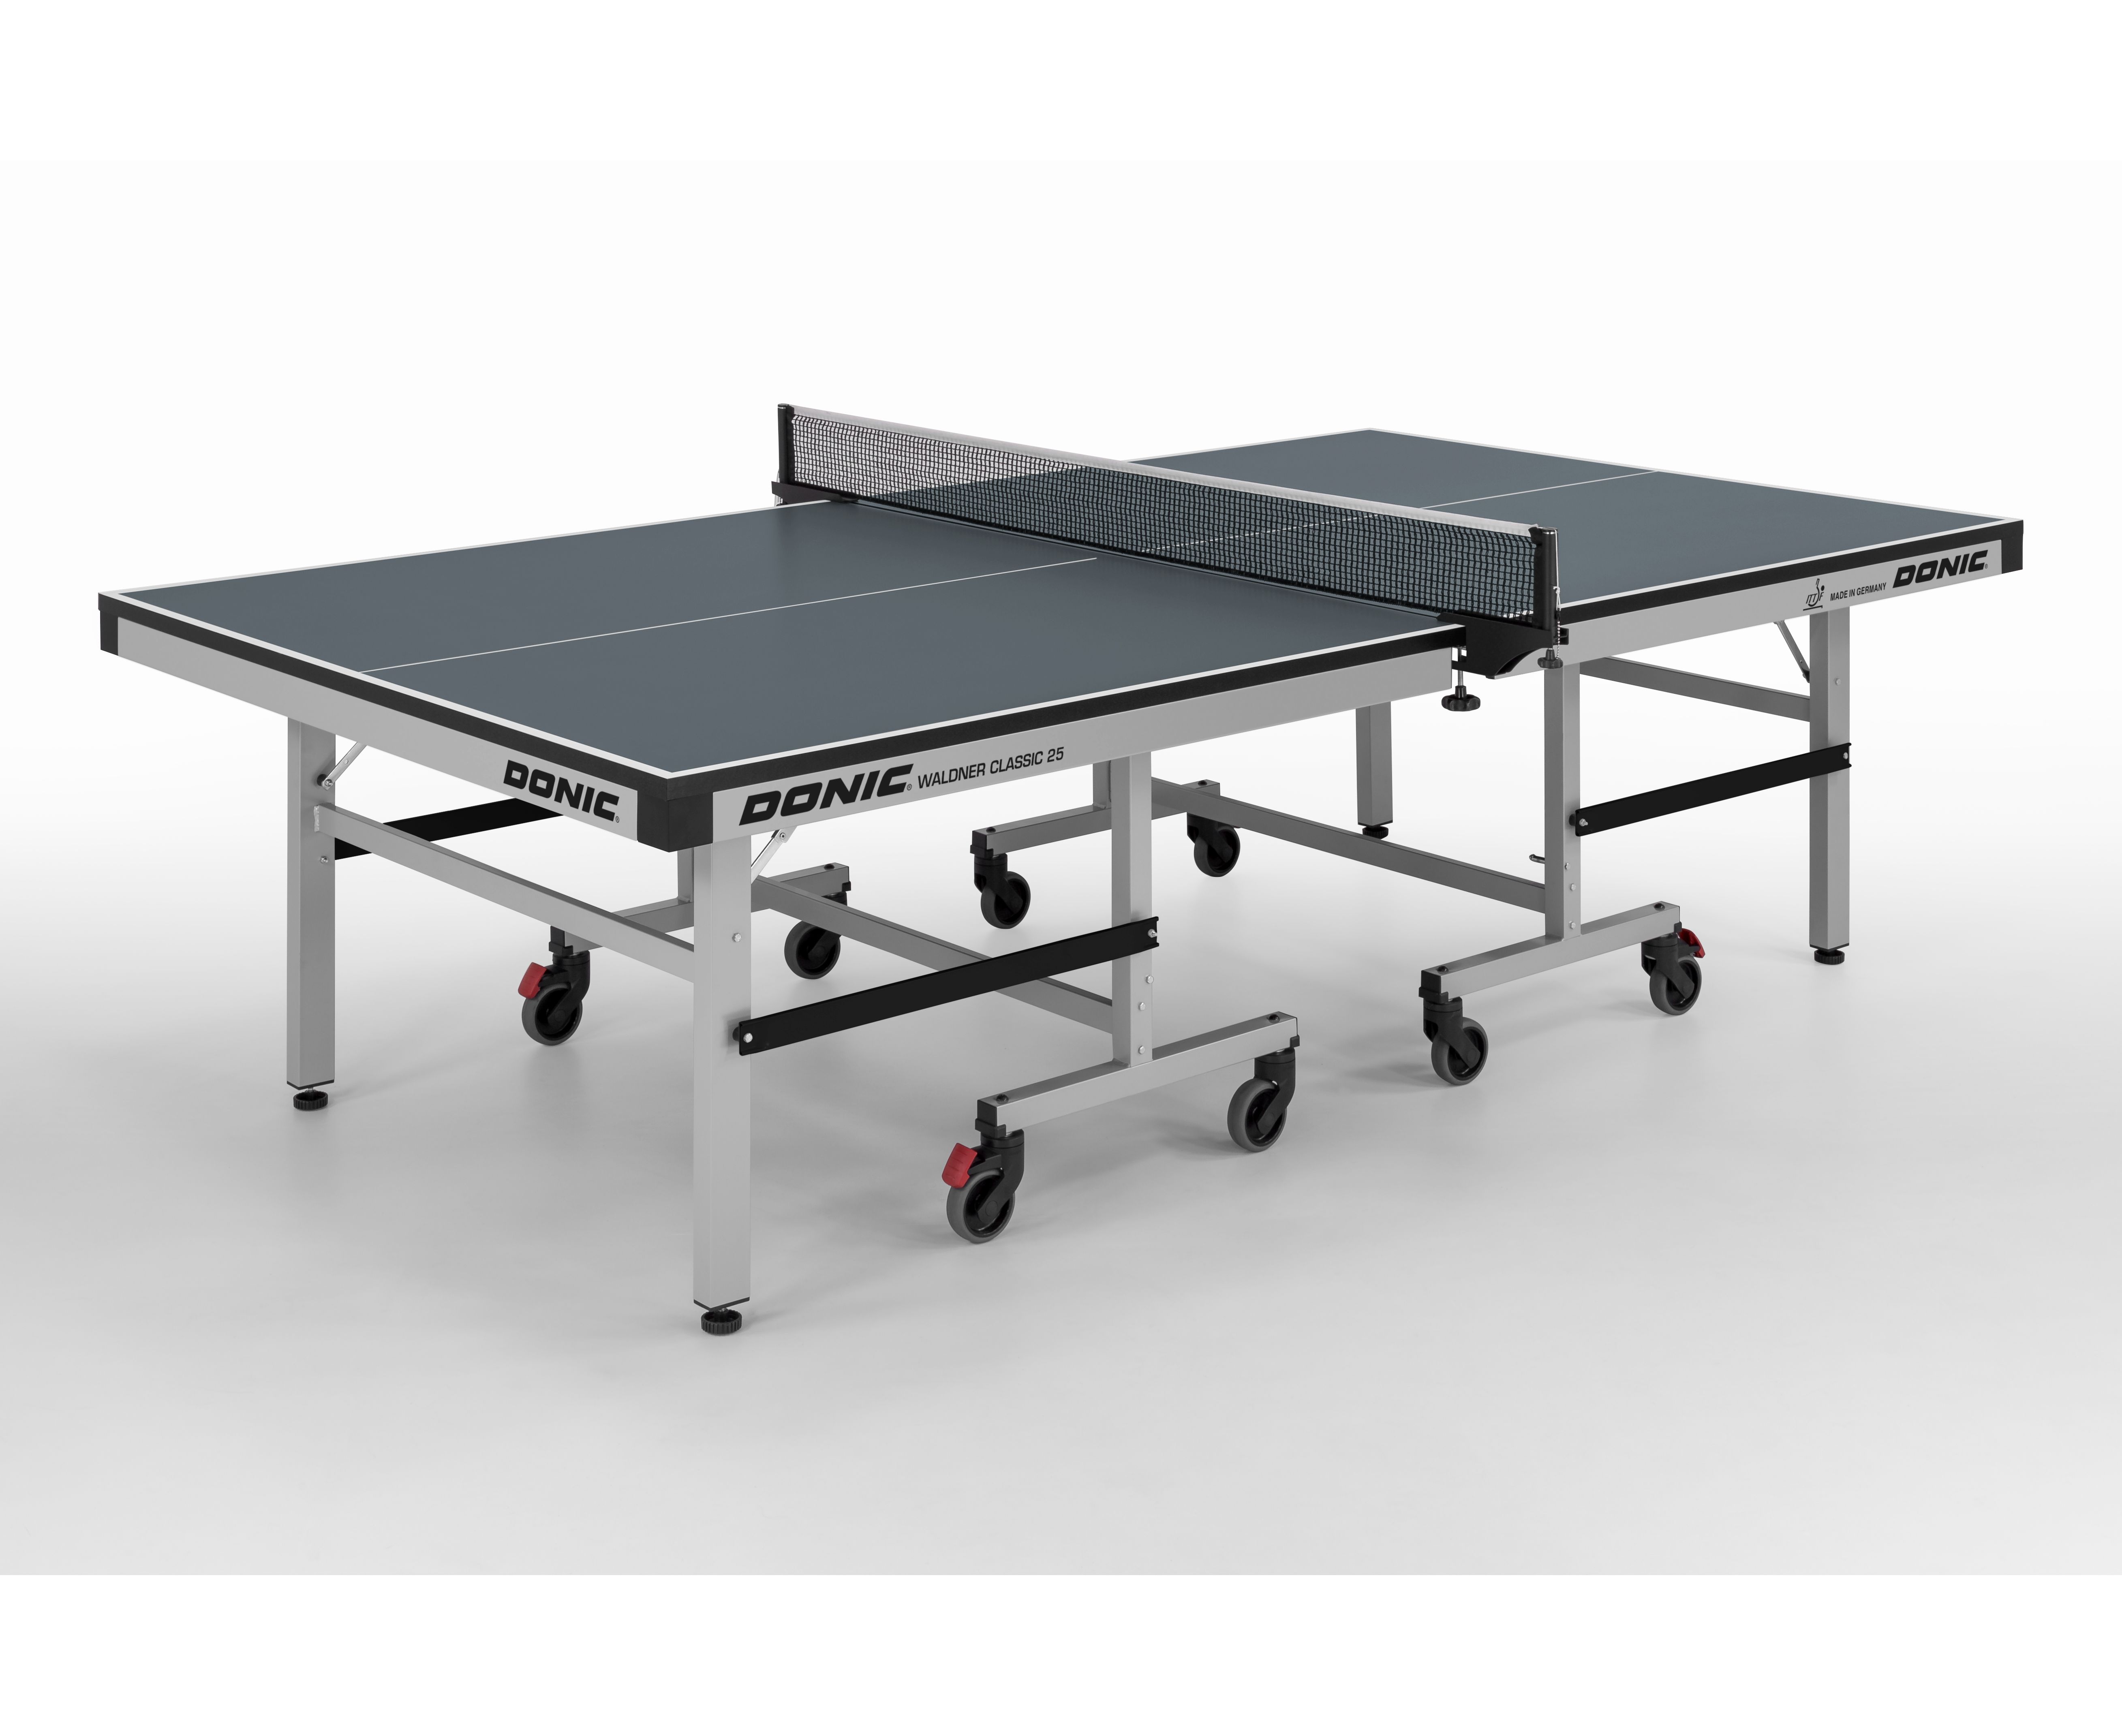 

Теннисный стол DONIC Waldner Classic 25 grey (без сетки), Серый, Waldner Classic 25 grey (без сетки)